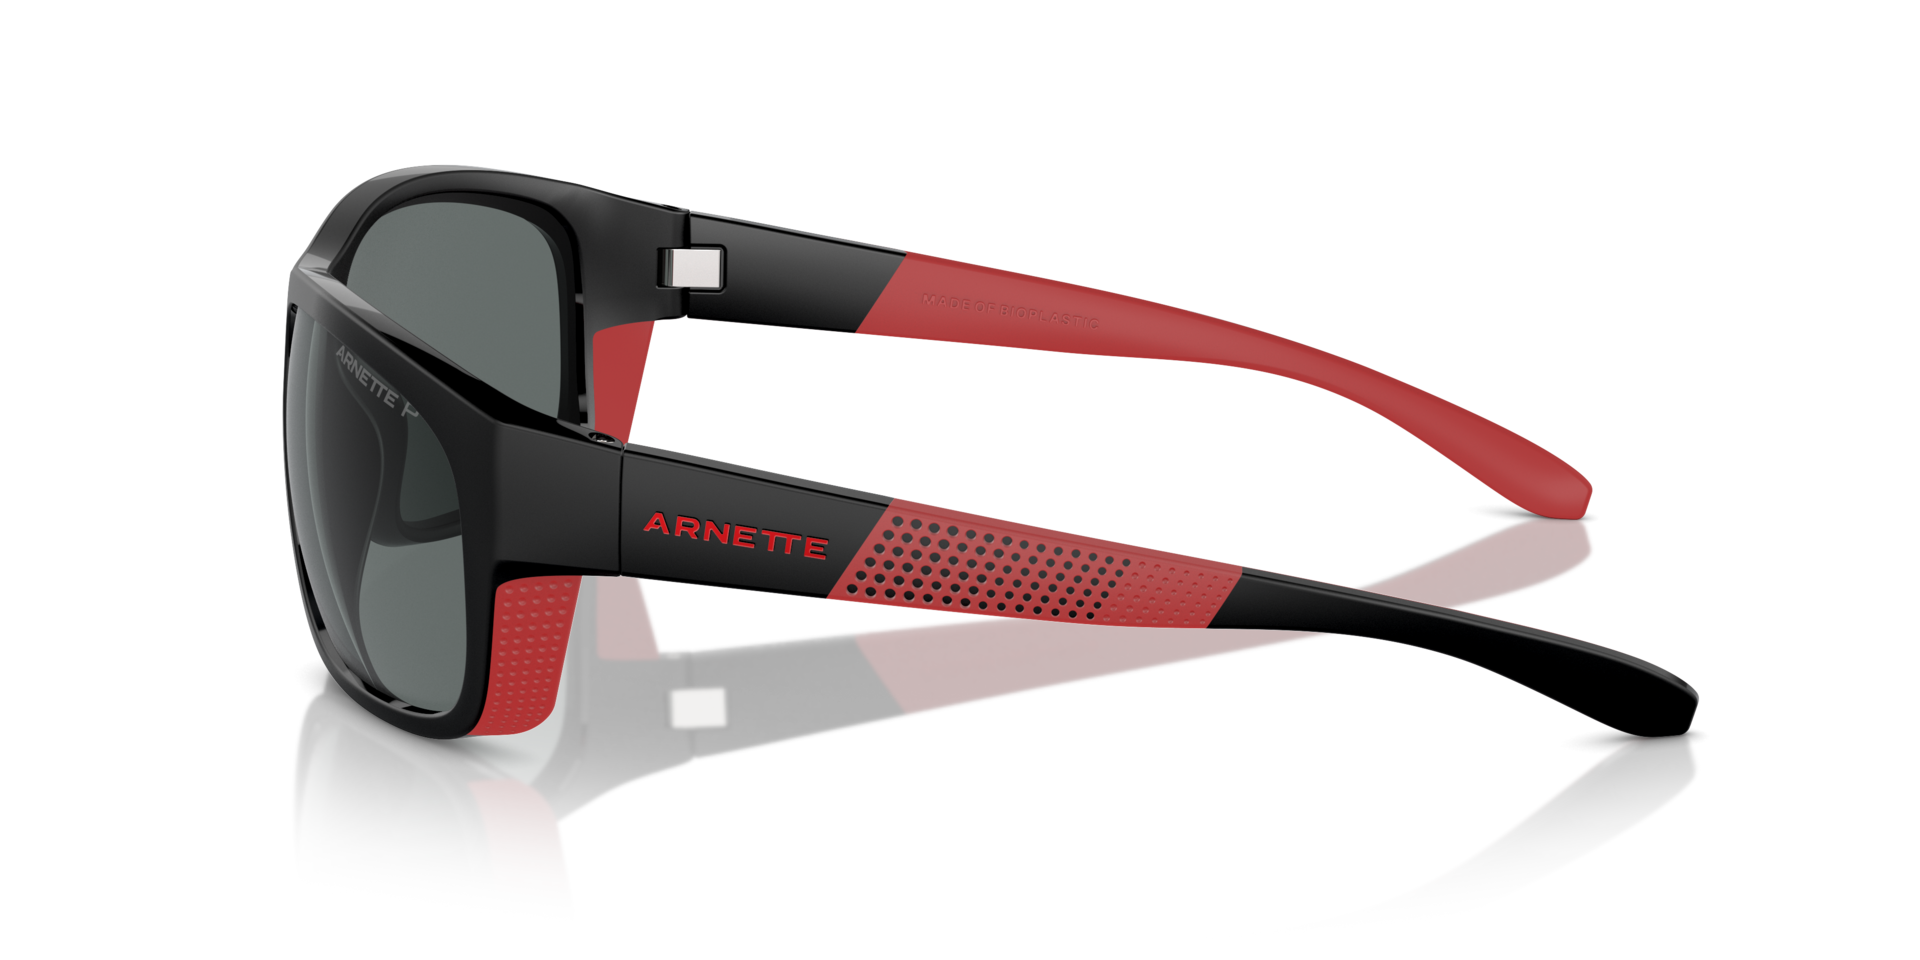 Das Bild zeigt die Sonnenbrille AN4337 275381 von der Marke Arnette in schwarz/rot.